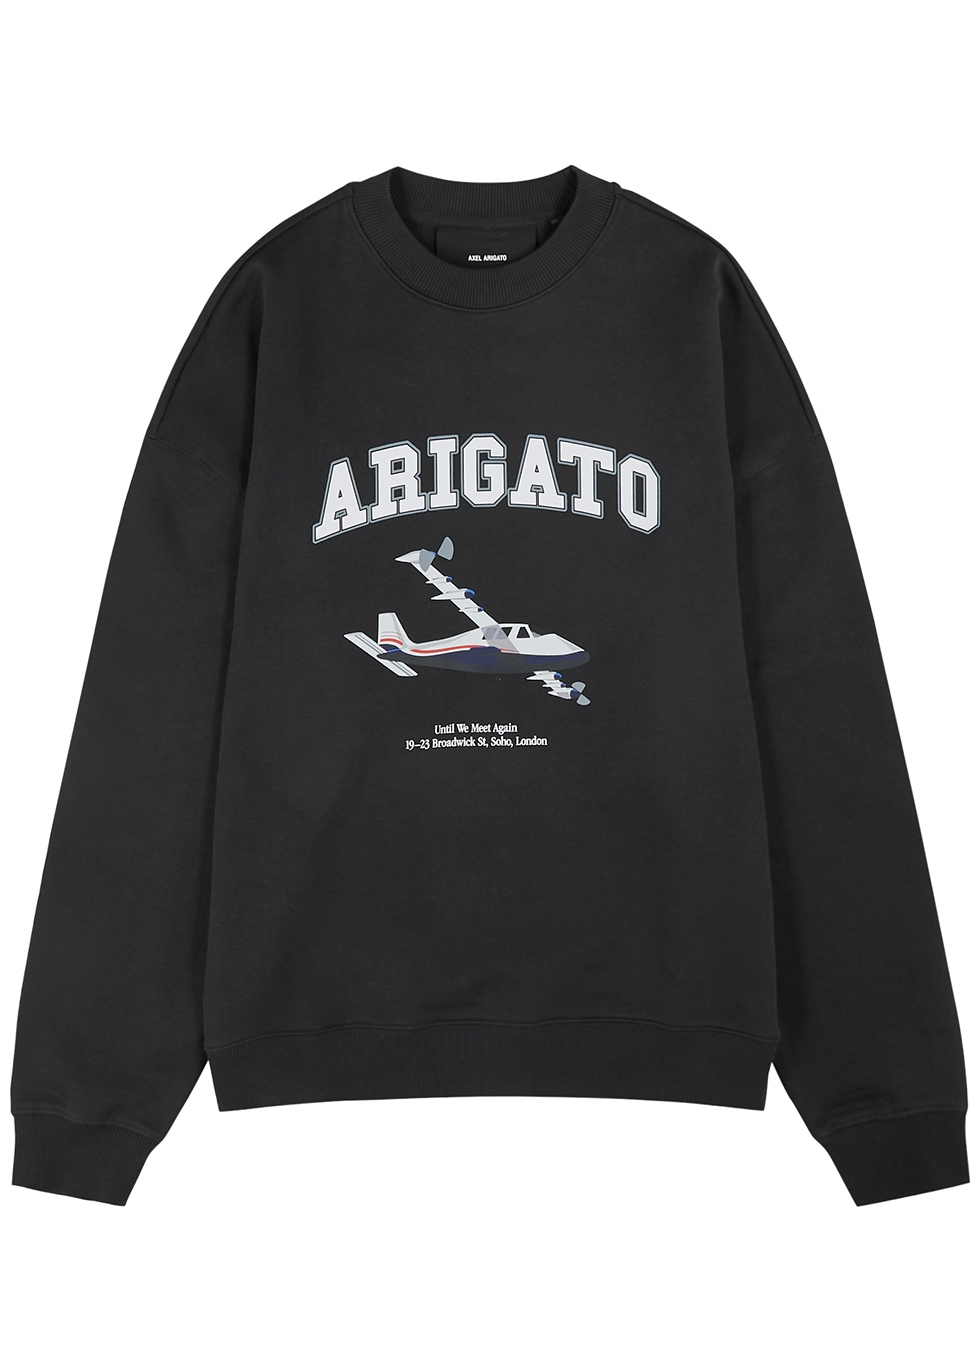 Voyage dark grey logo cotton sweatshirt